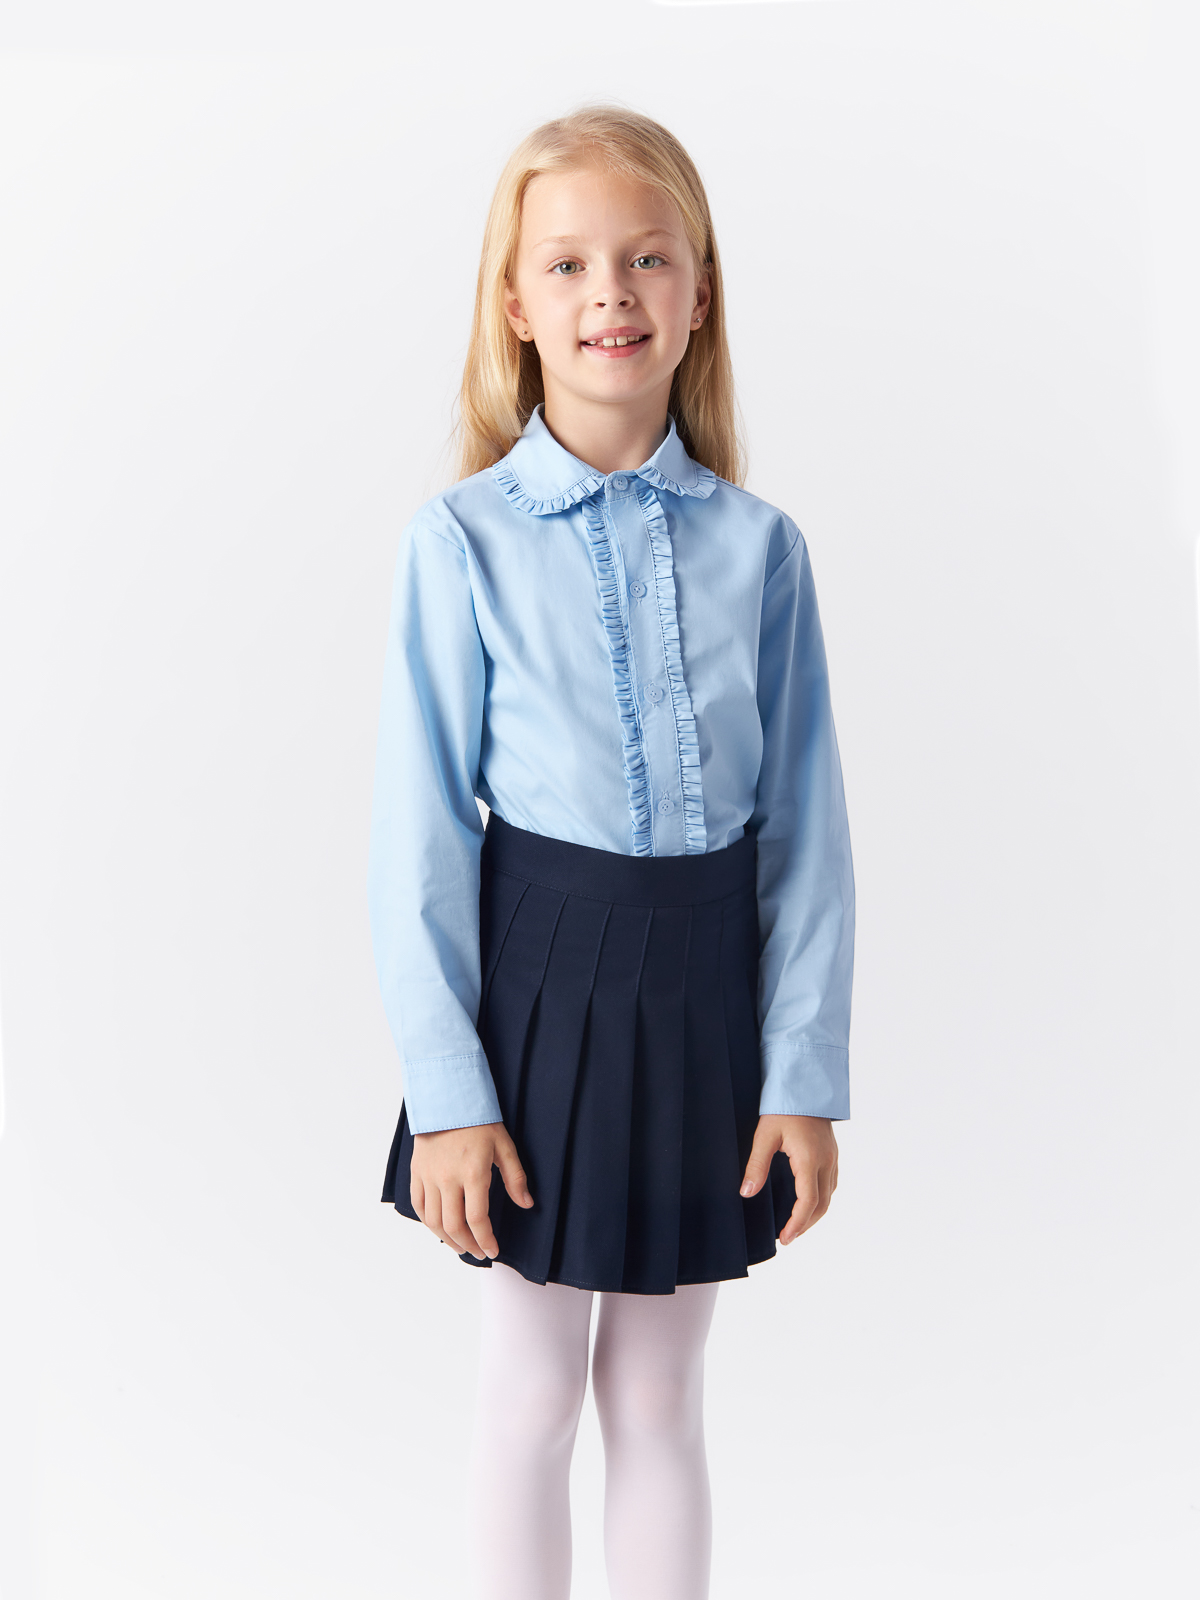 Блузка Yiwu Xflot Supply Chain детская, BS-2blue, размер 160 см блузка классическая с принтом сердечко белая button blue 170